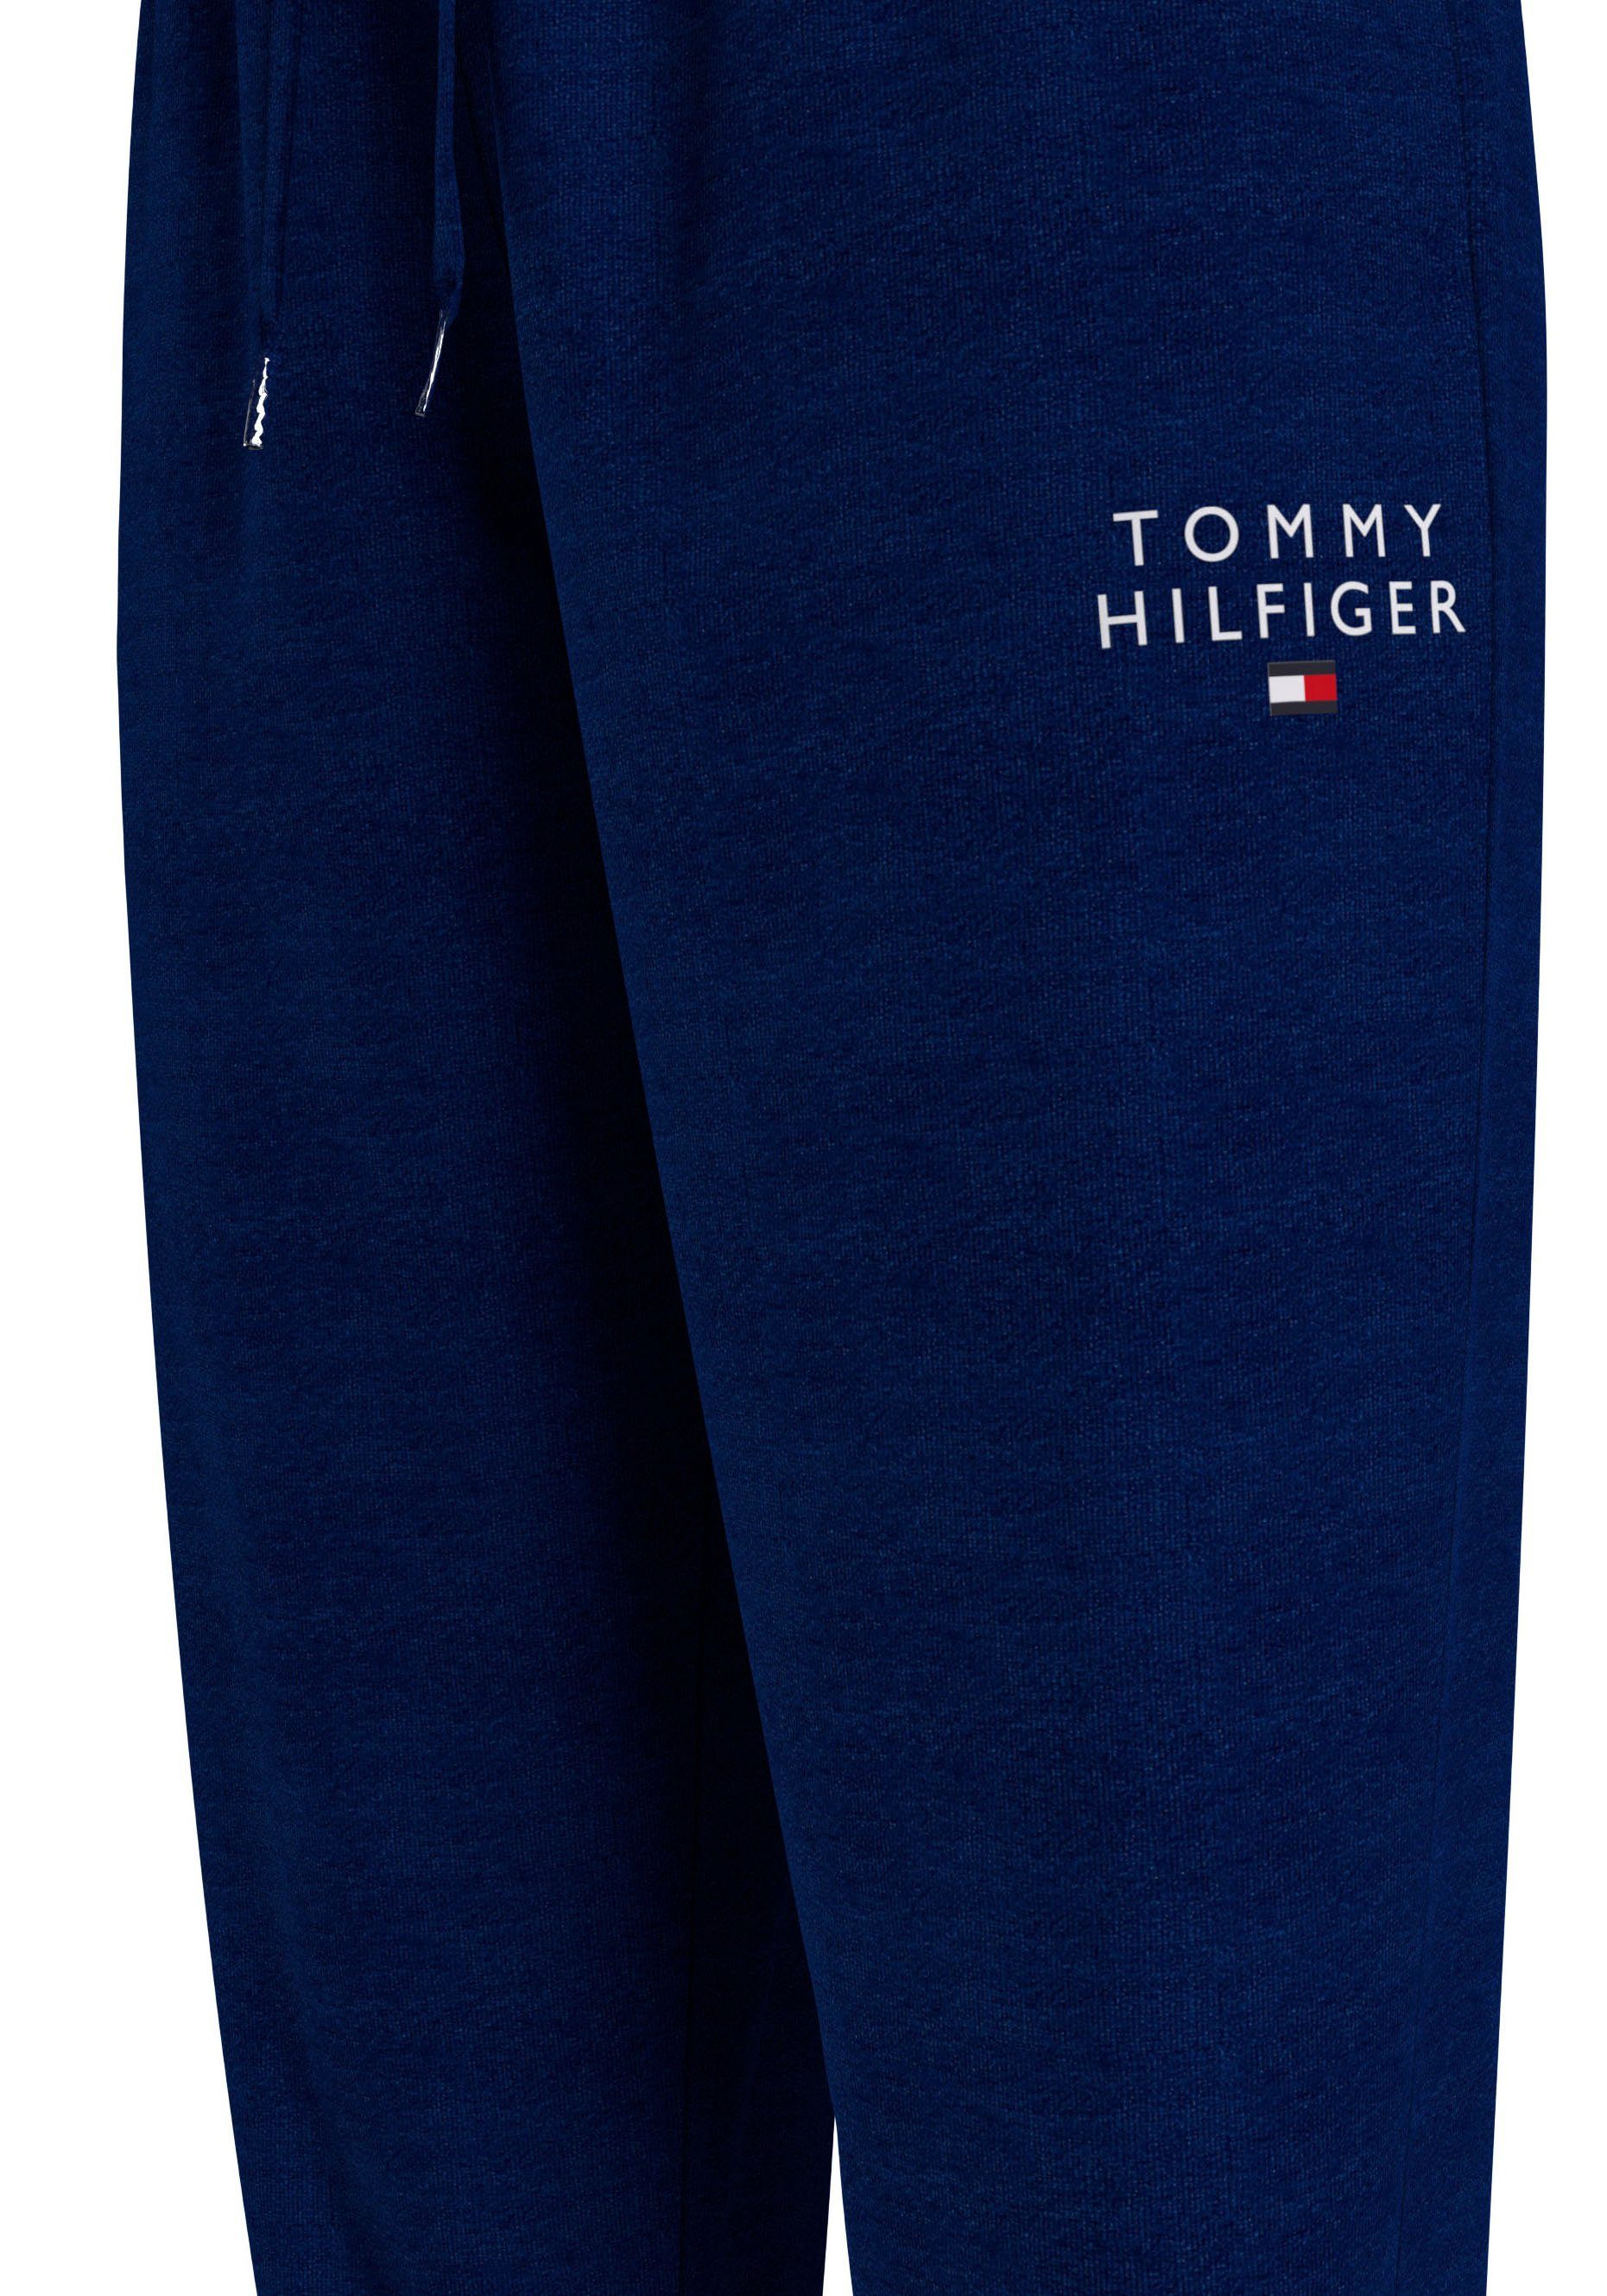 Markenlogo-Aufdruck Hilfiger Sweathose mit Tommy TRACK Hilfiger Underwear Tommy PANTS